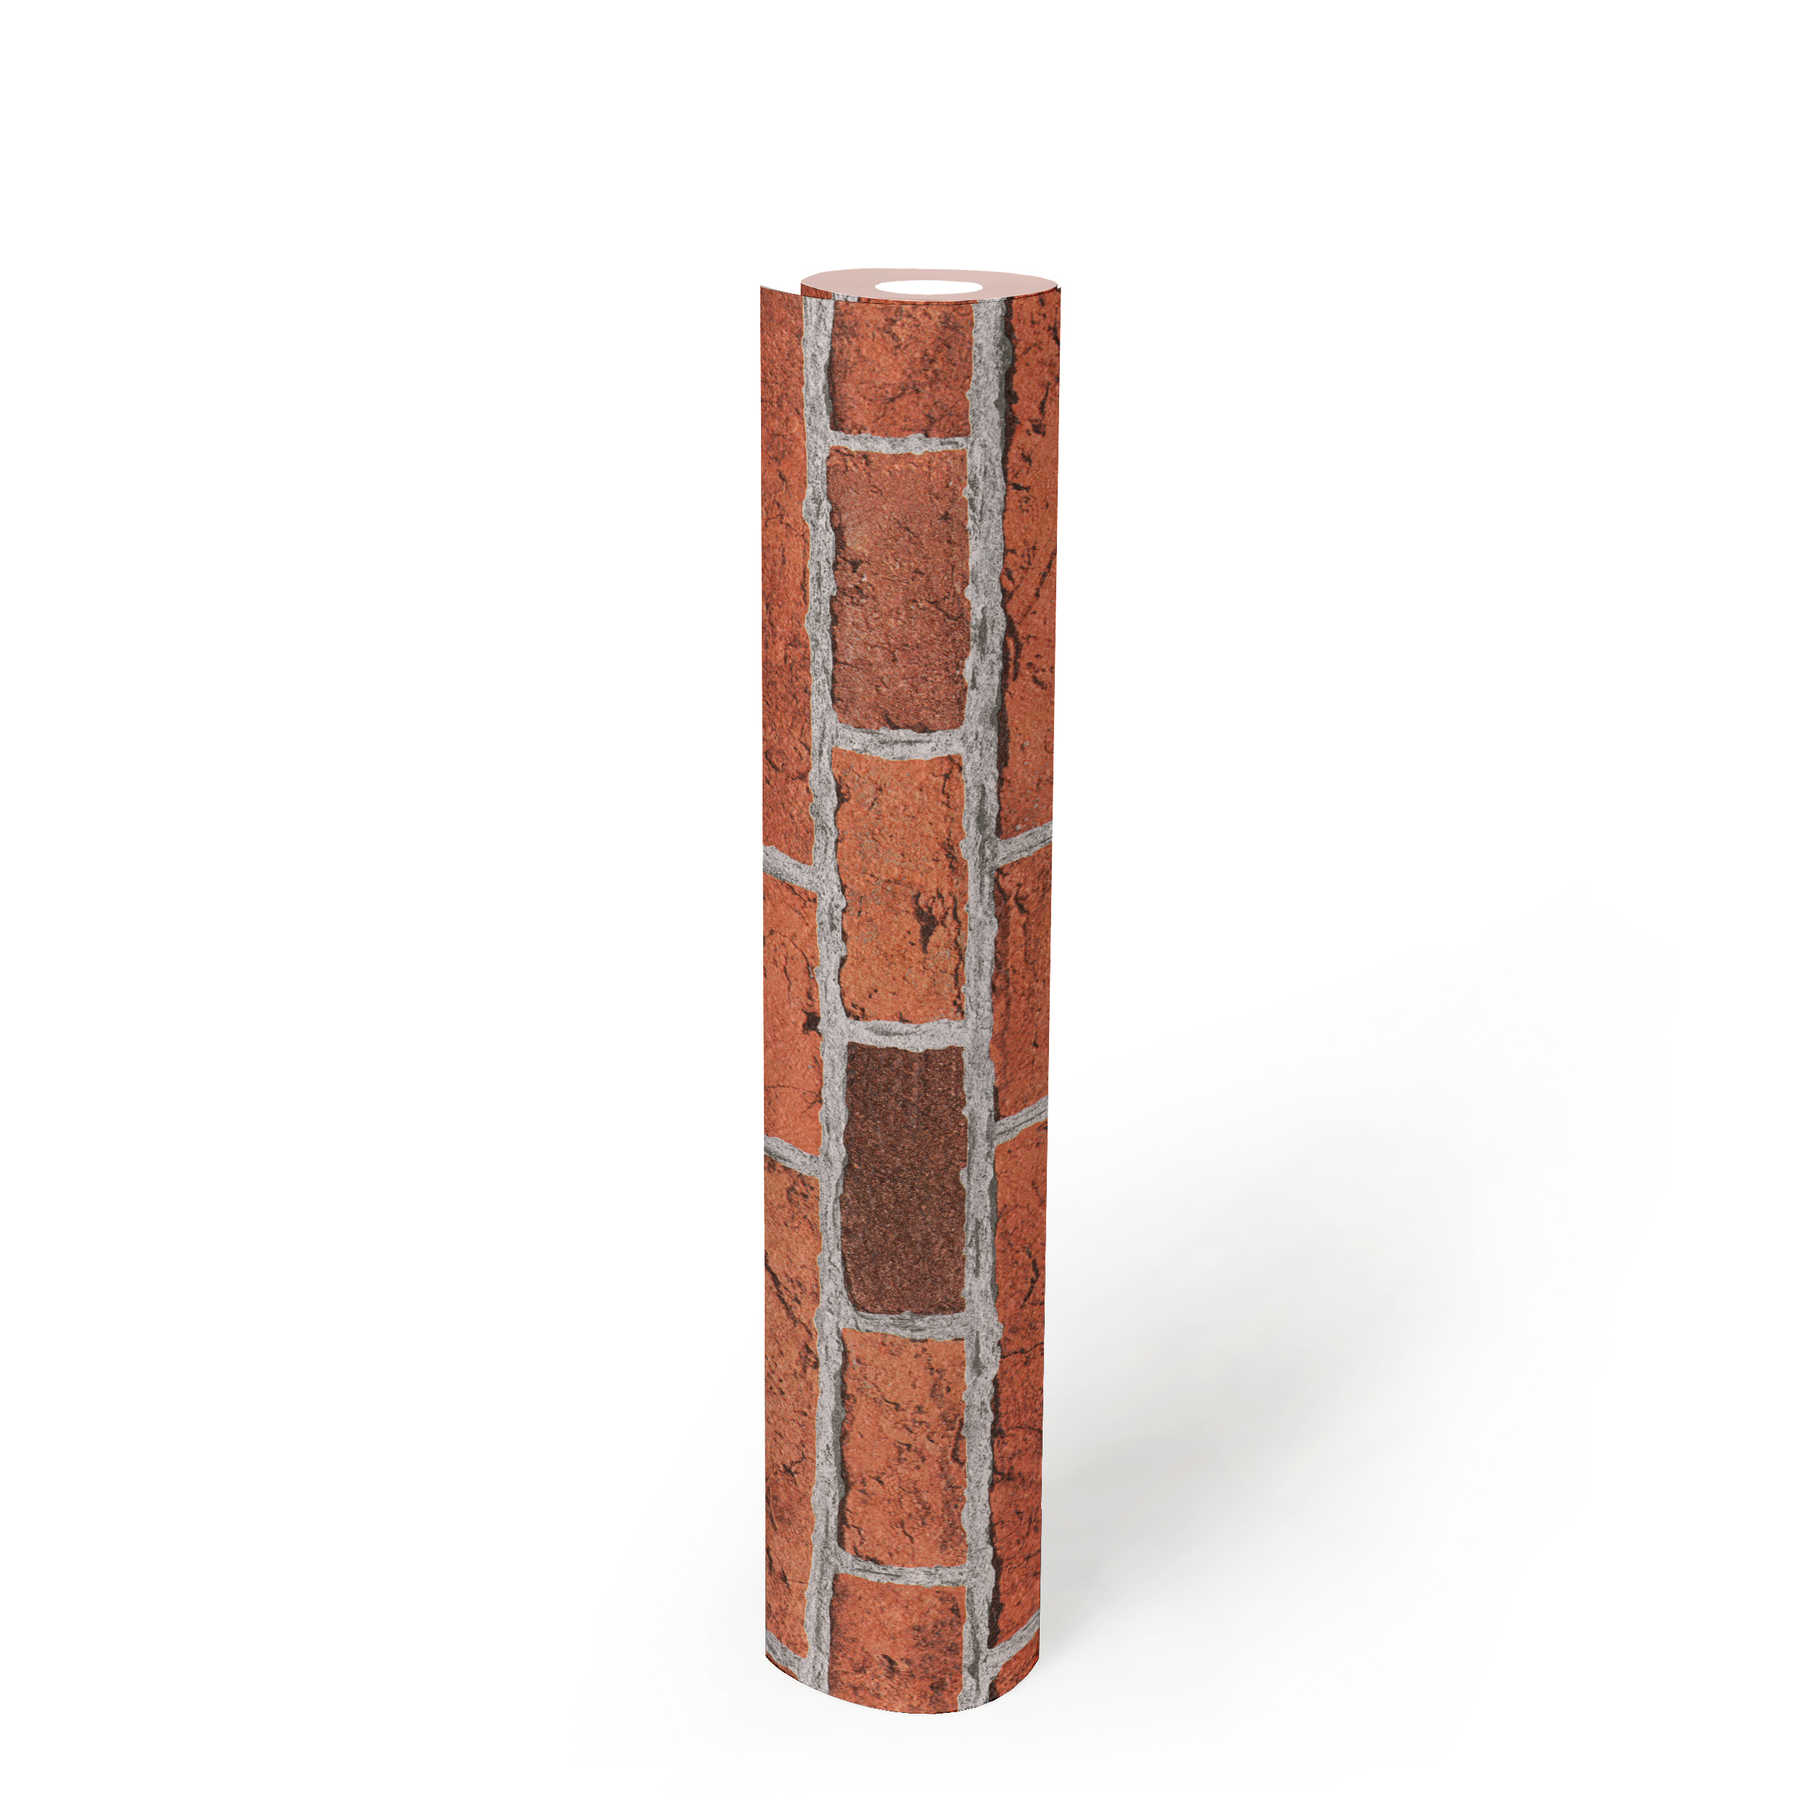             Carta da parati in pietra rustica con muro di mattoni stilizzato - rosso, grigio
        